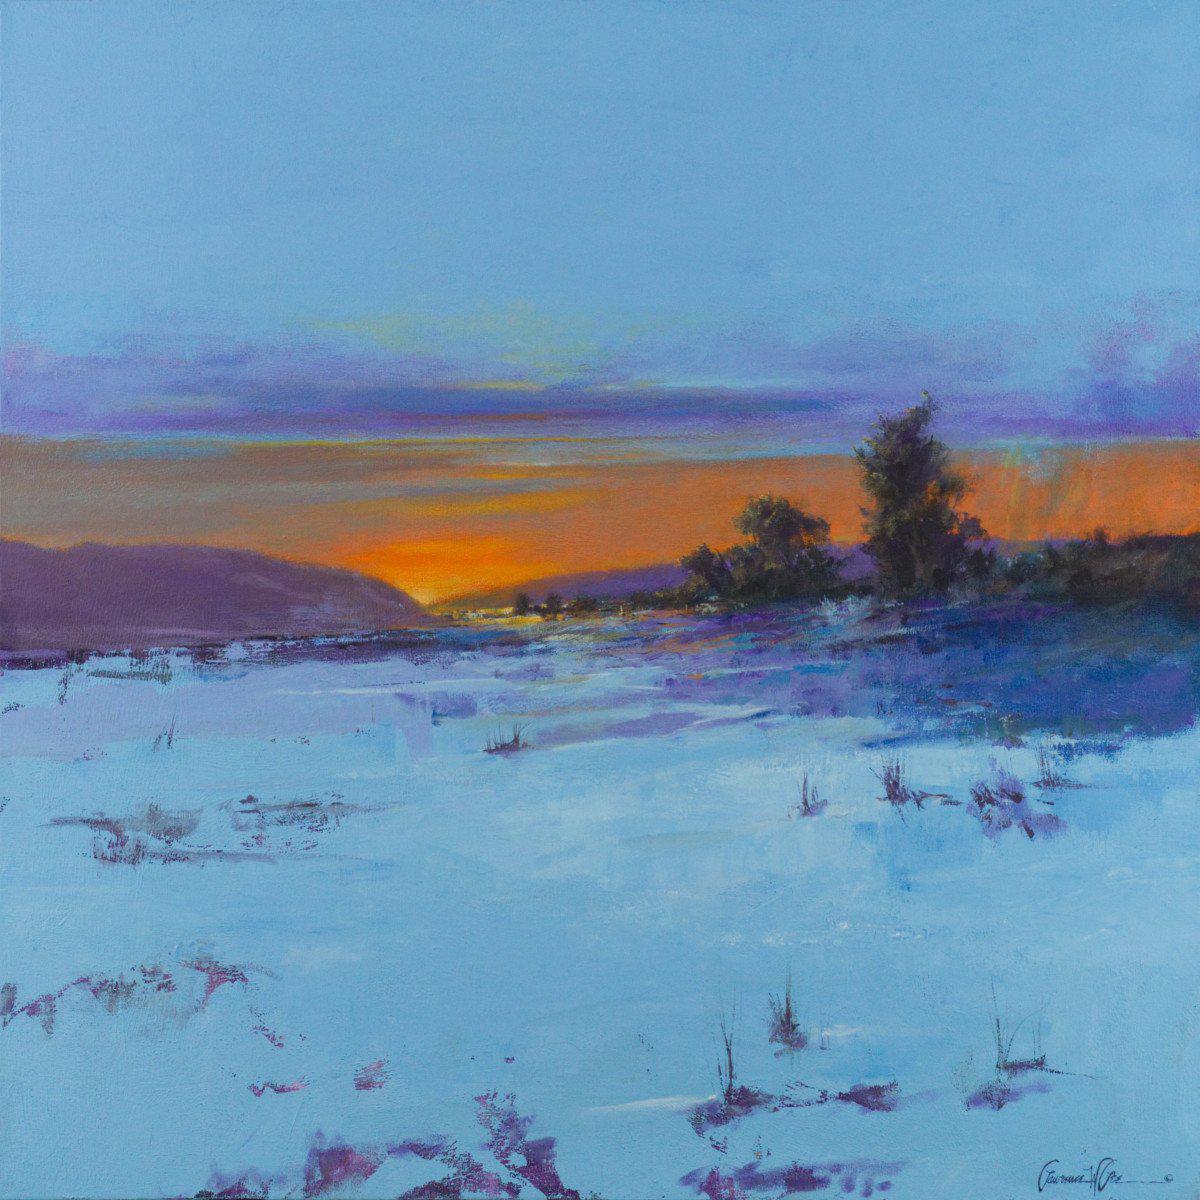 Winterset-Painting-Lawrence Lee-Sorrel Sky Gallery